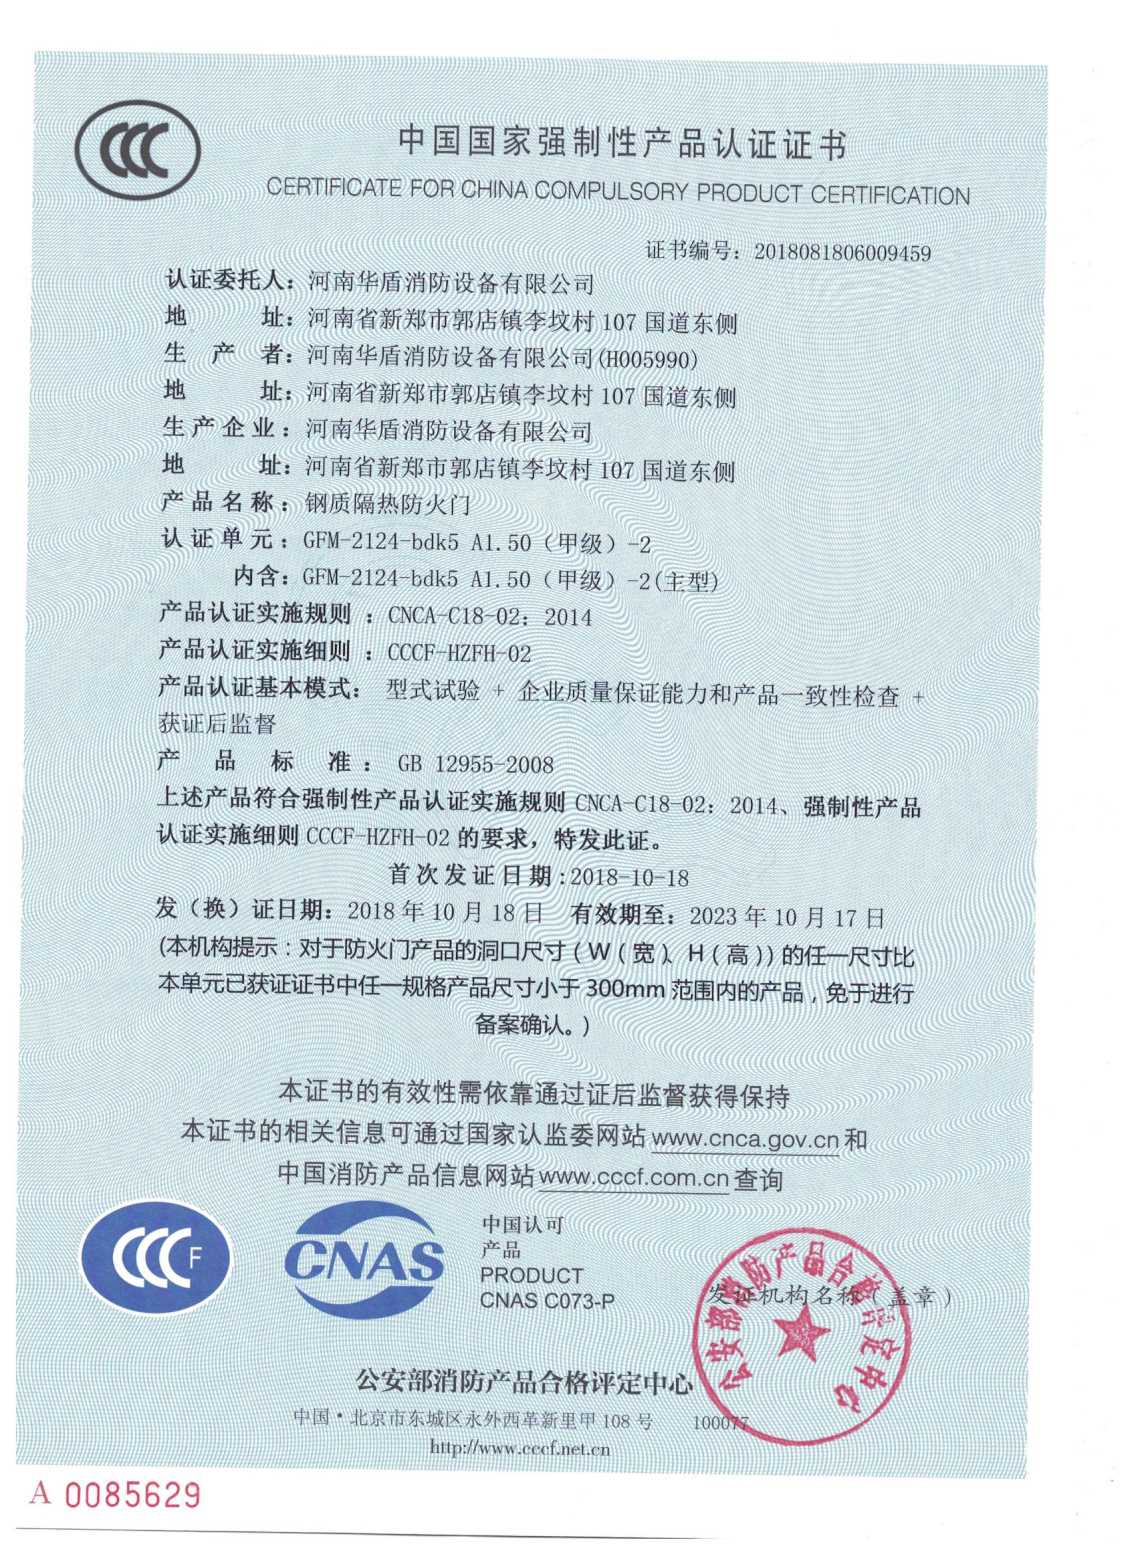 南阳GFM-2124-bdk5A1.50（甲级）-2-3C证书